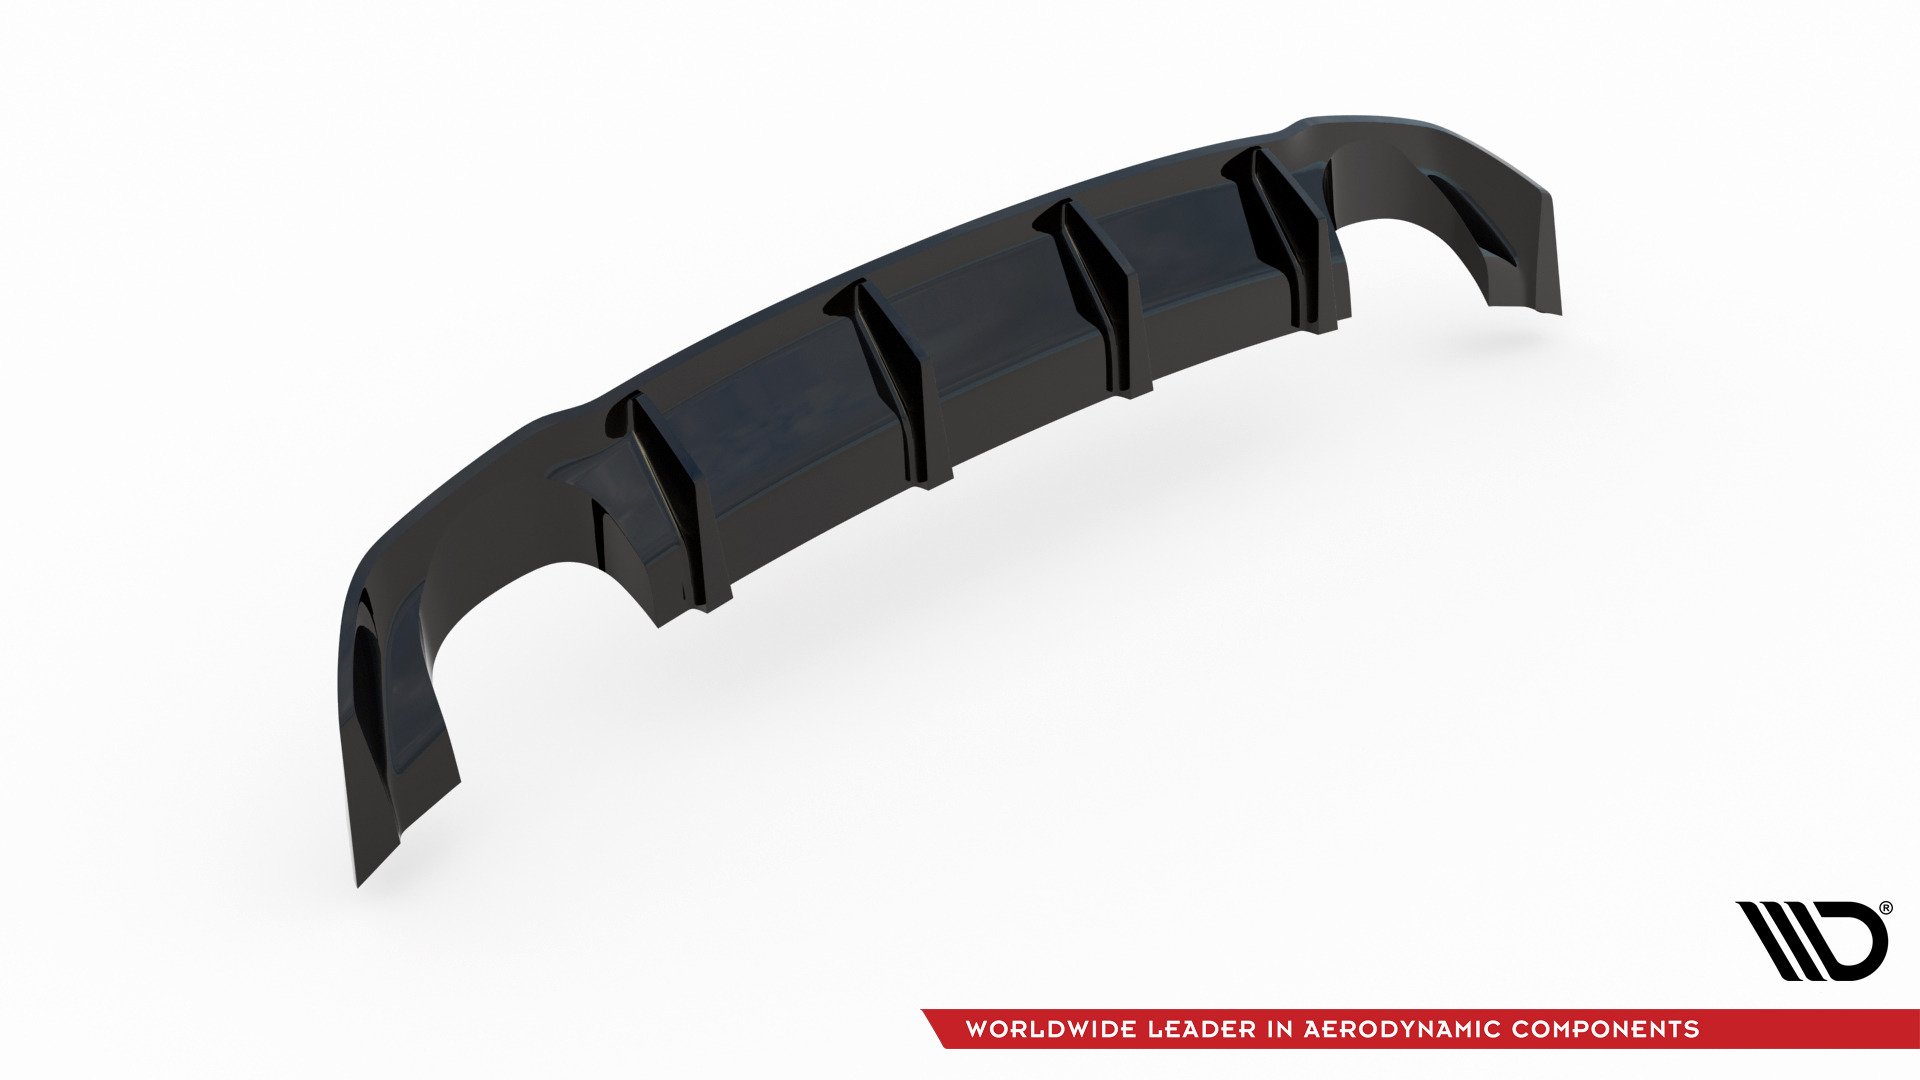 Maxton Design Diffusor Heck Ansatz für Seat Leon III Cupra schwarz Hochglanz